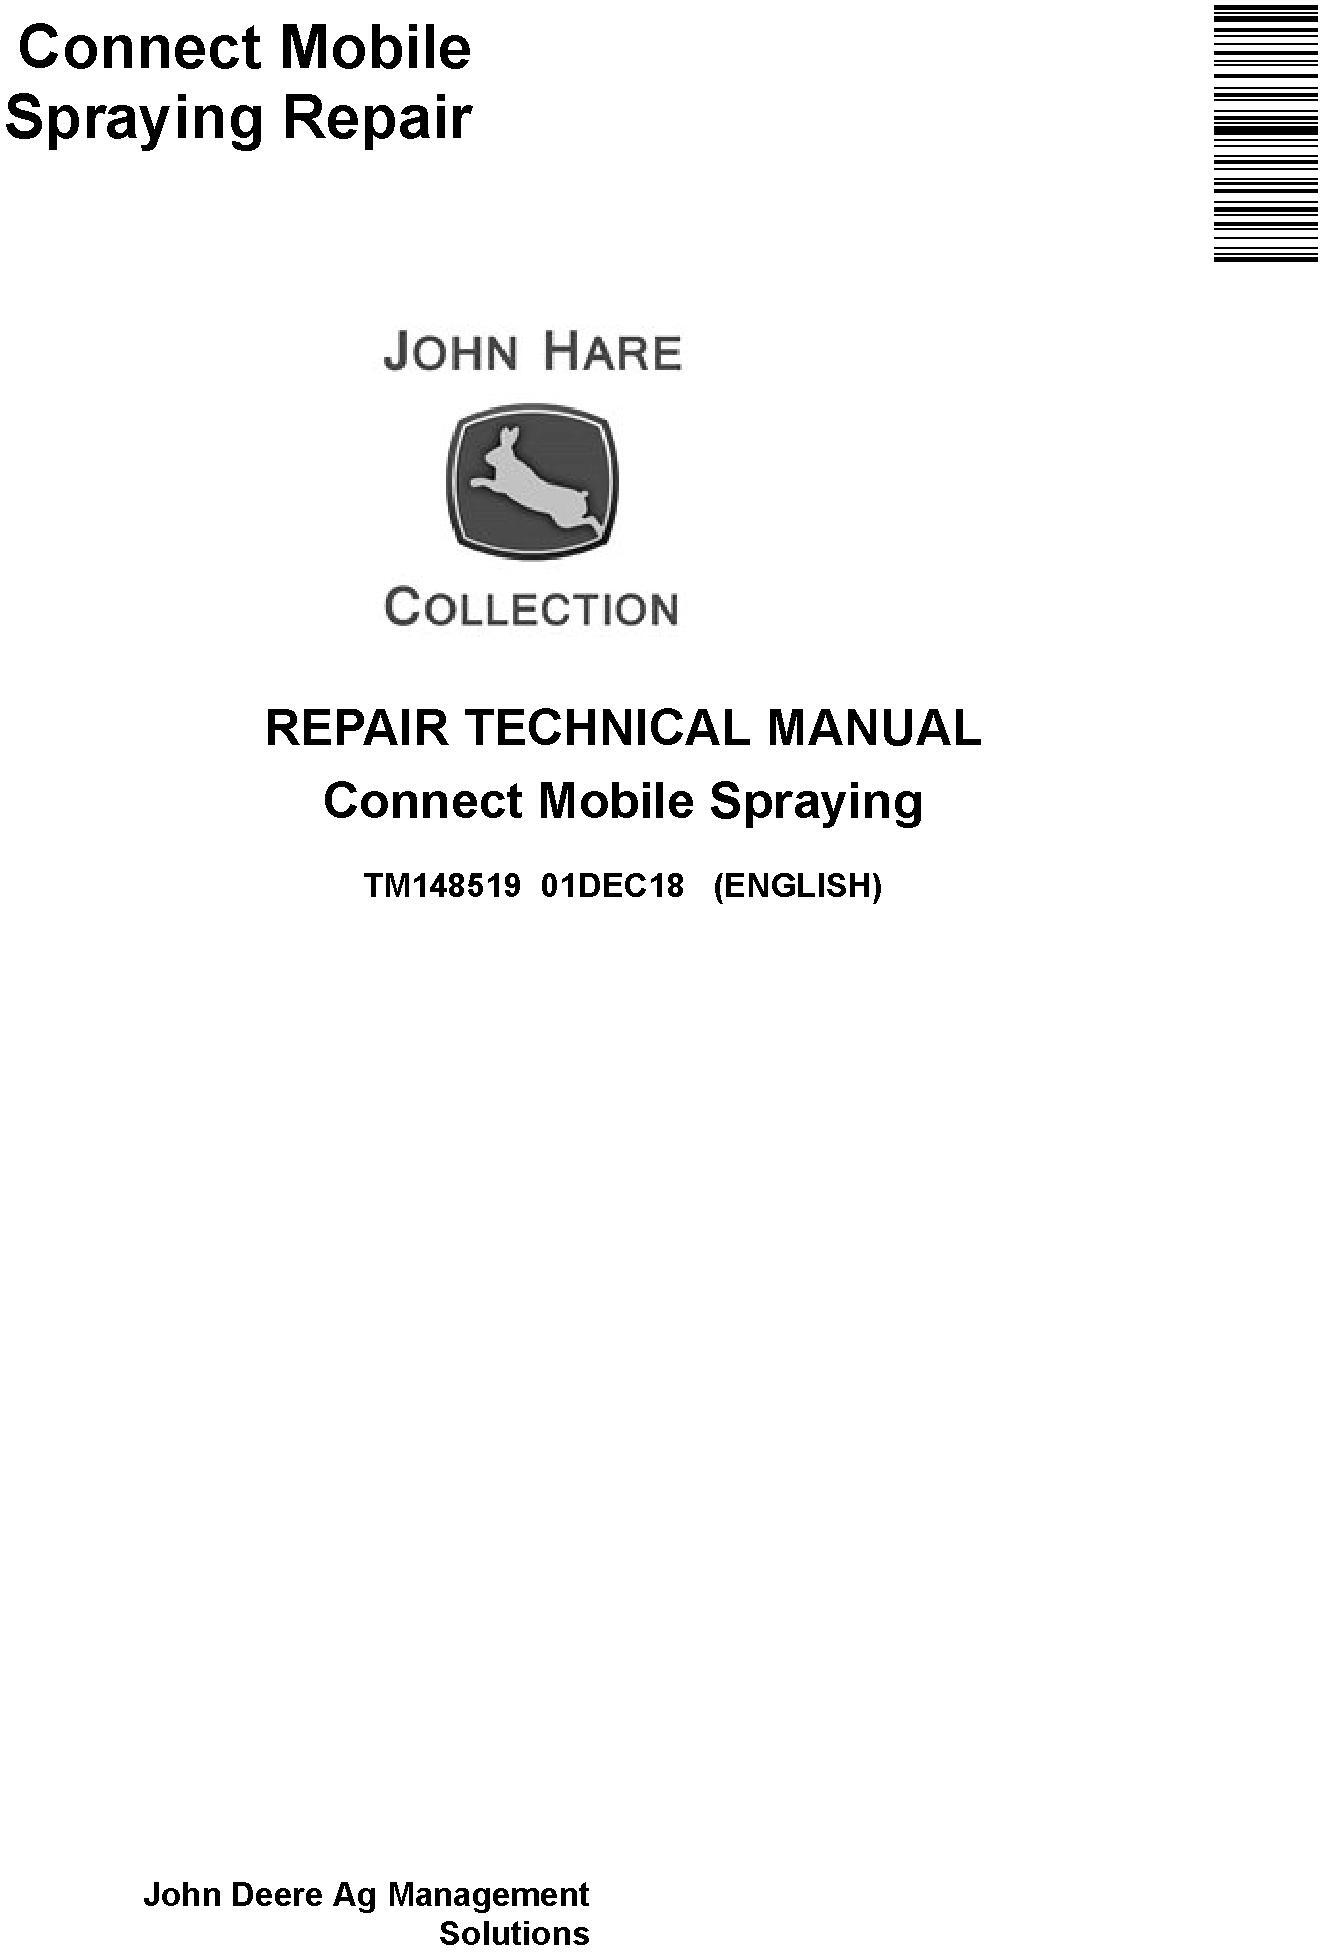 John Deere Connect Mobile Spraying Repair Technical Manual TM148519